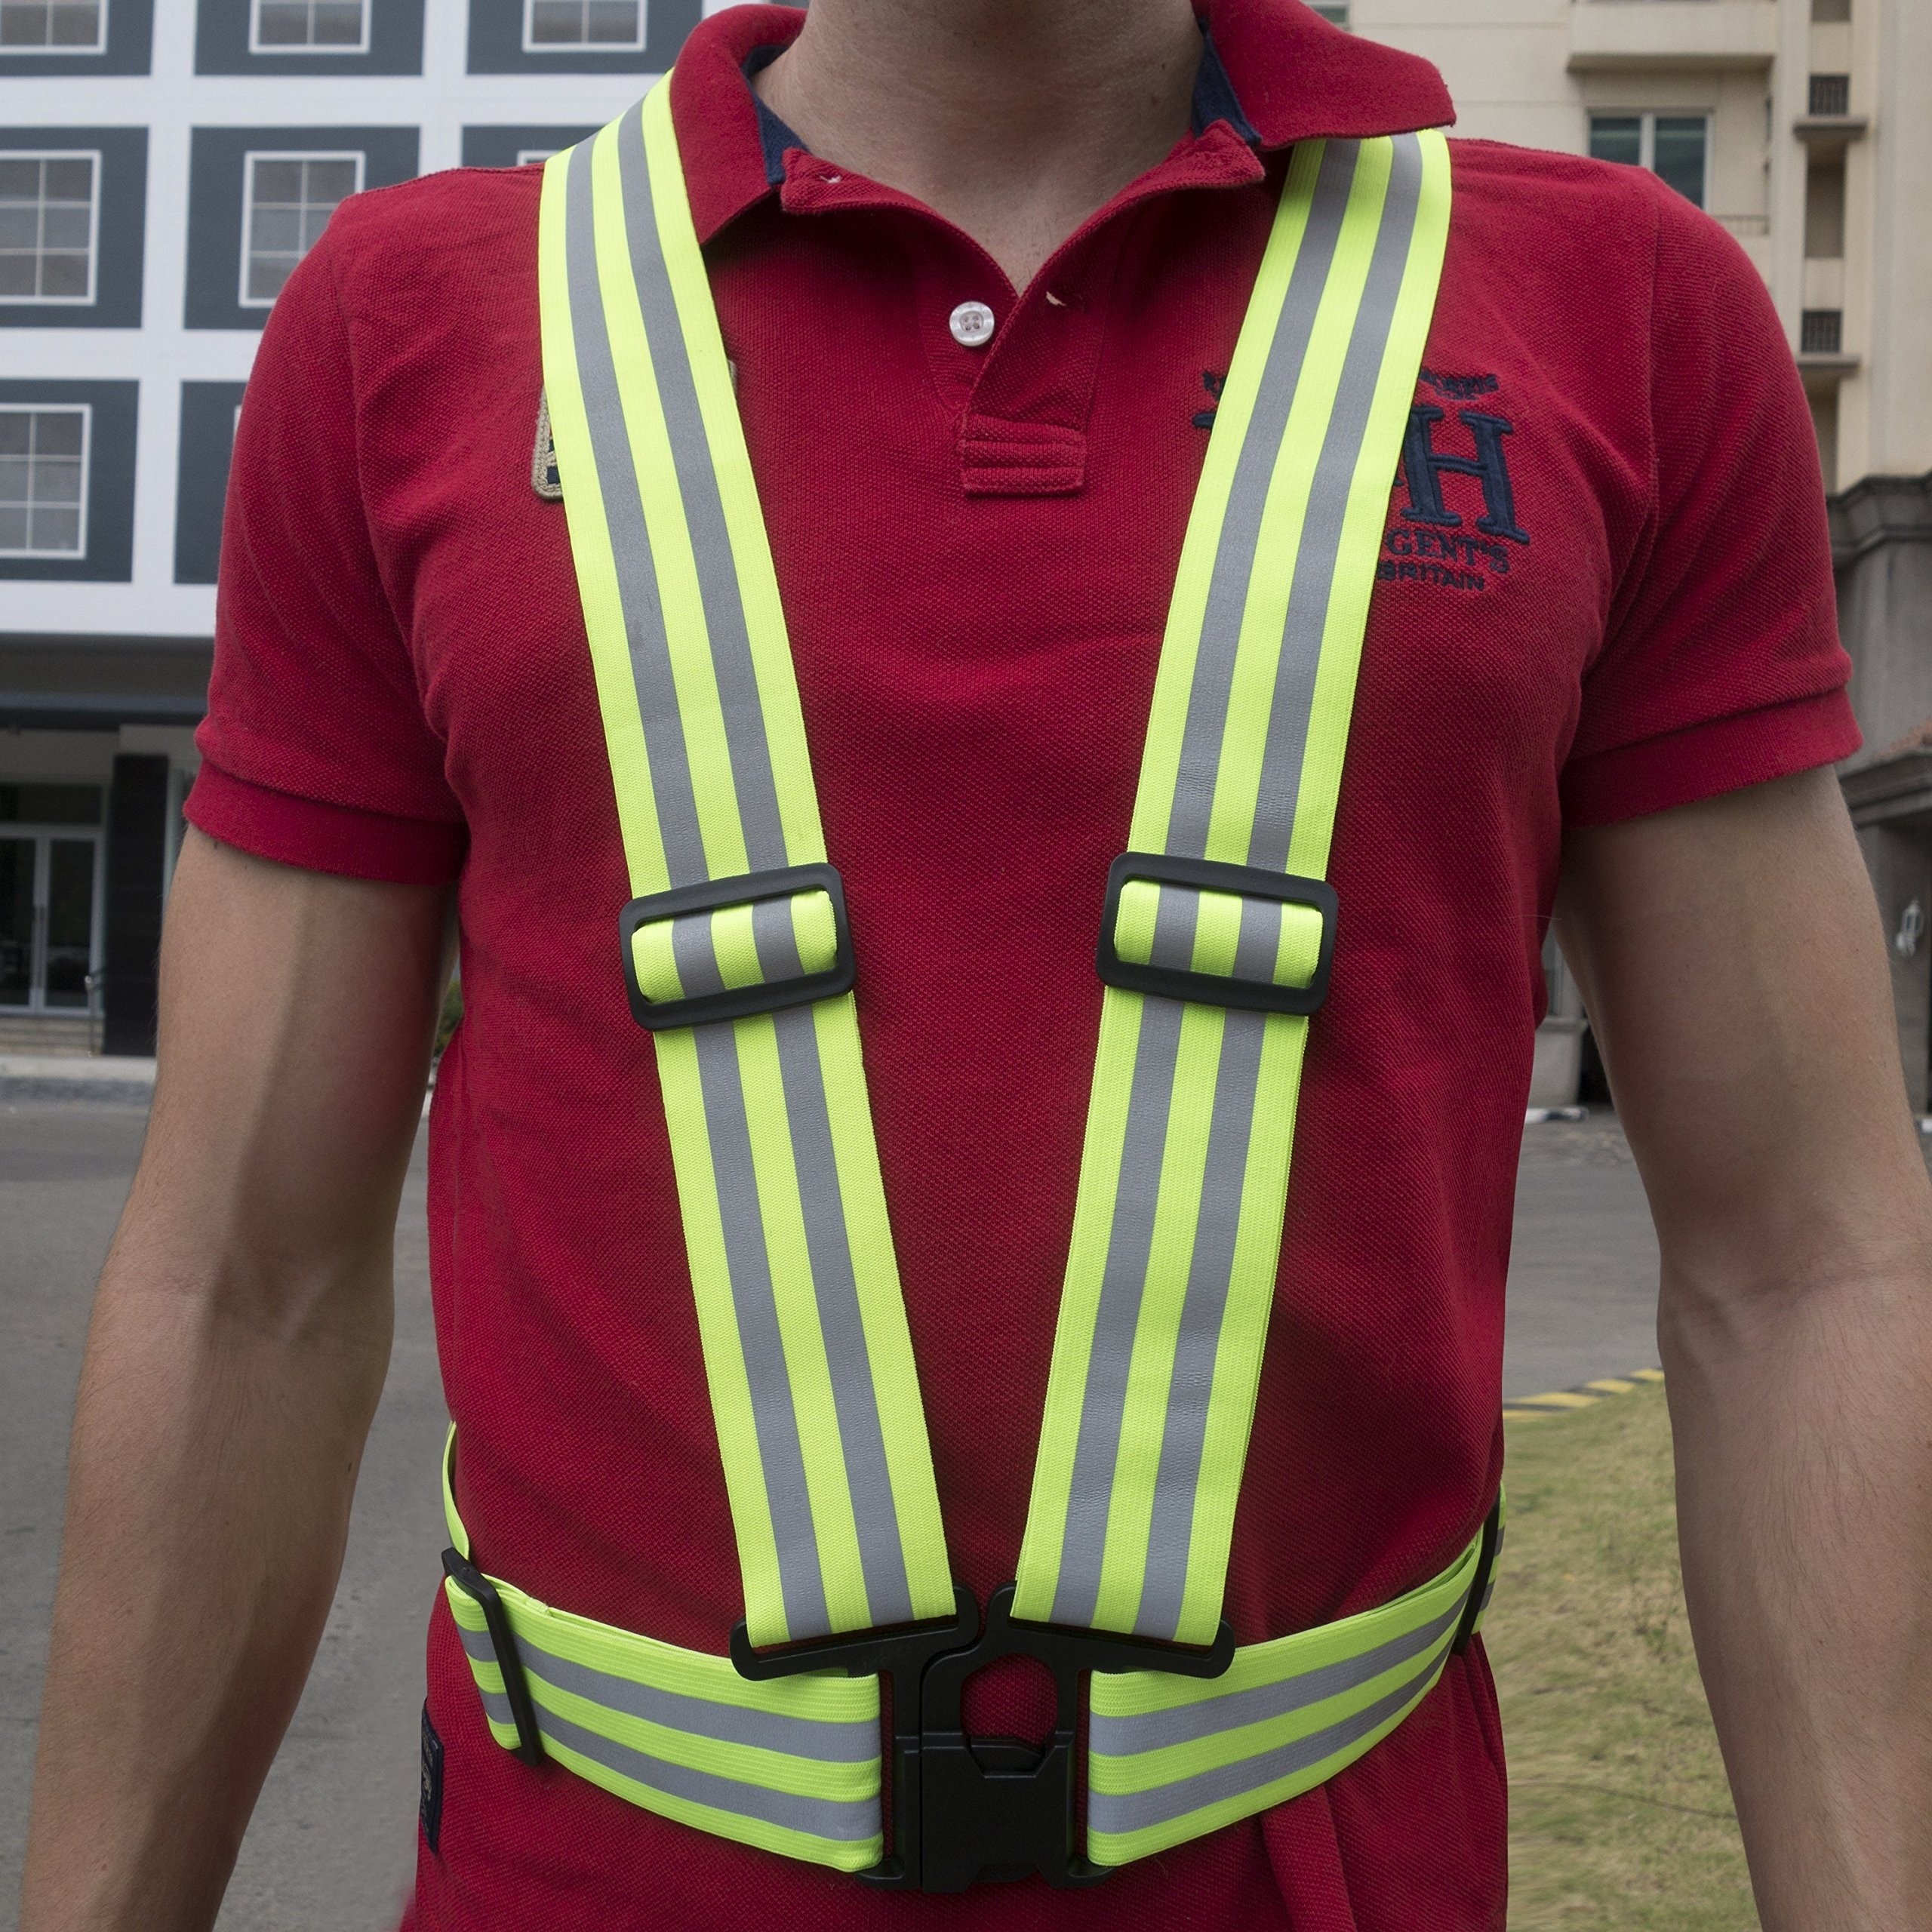 Safety Vest in Shomolu - Safetywear & Equipment, Endurance Omayie